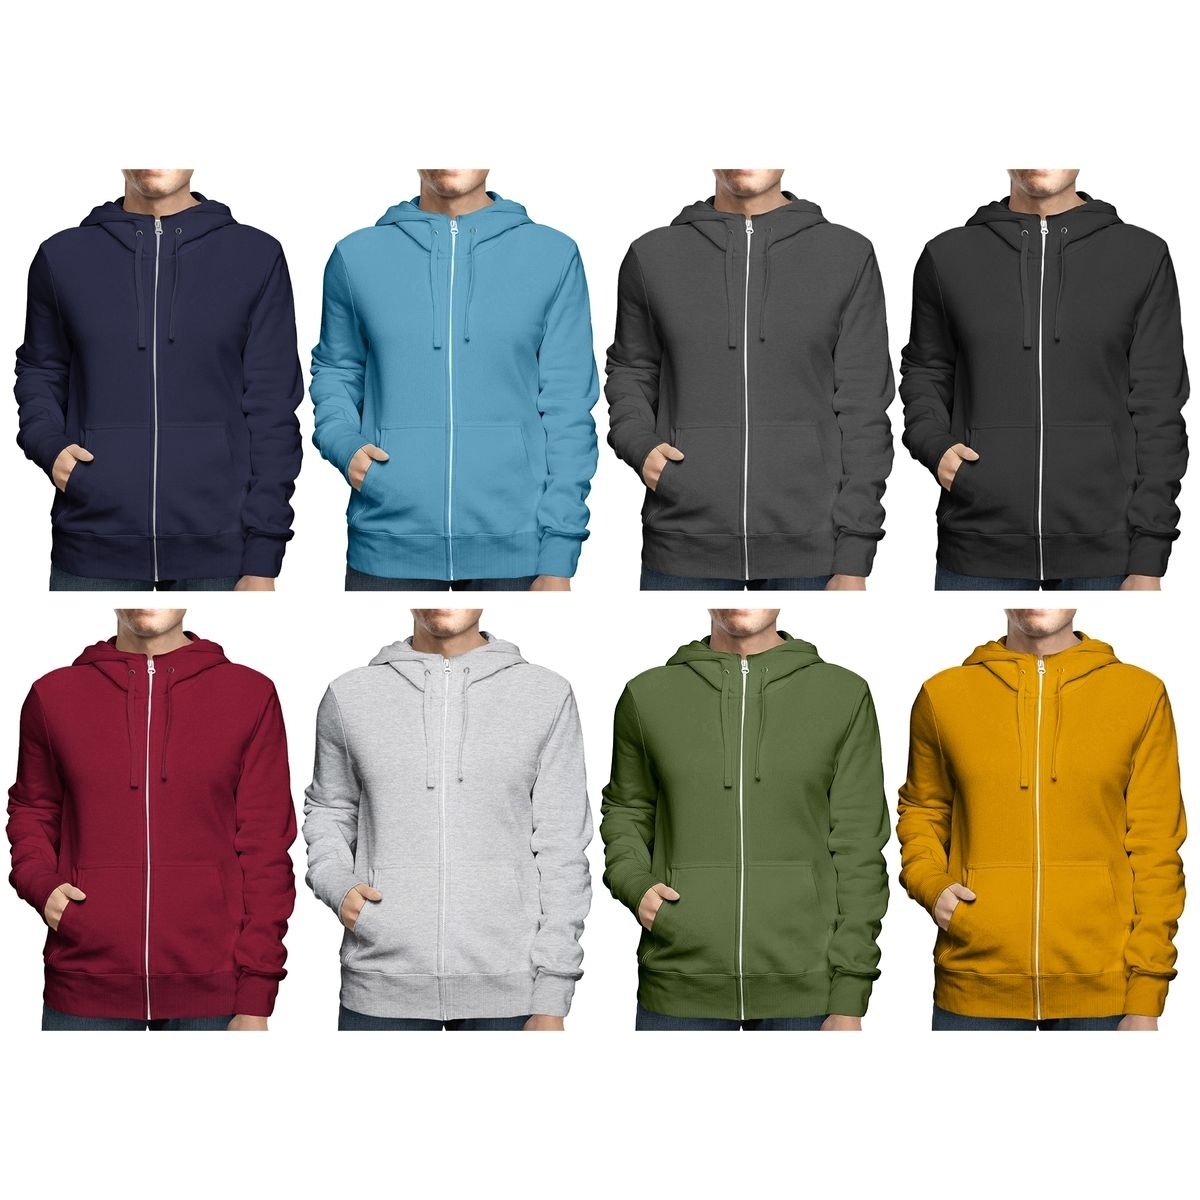 2-Pack: Men's Winter Warm Soft Cozy Full Zip-Up Fleece Lined Hoodie Sweatshirt - Small